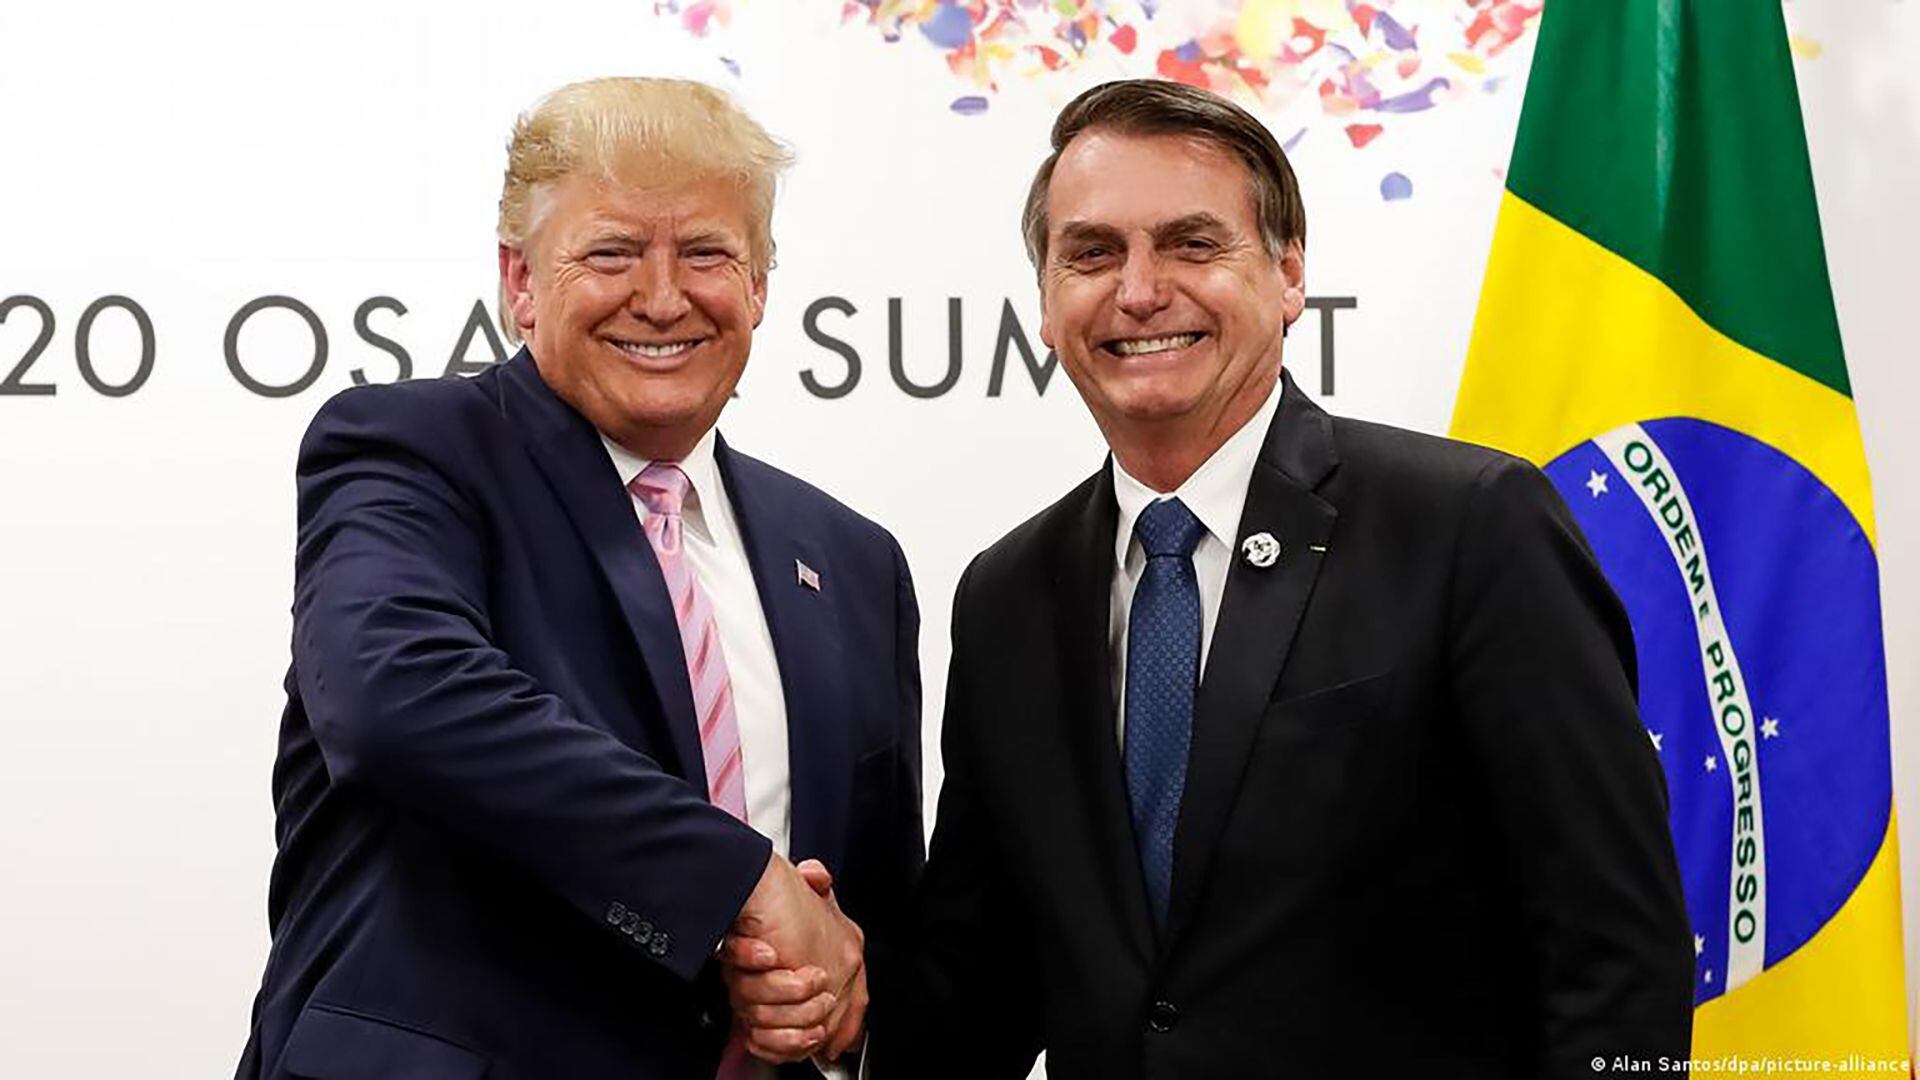 Semejanzas entre Trump, Bolsonaro y Milei